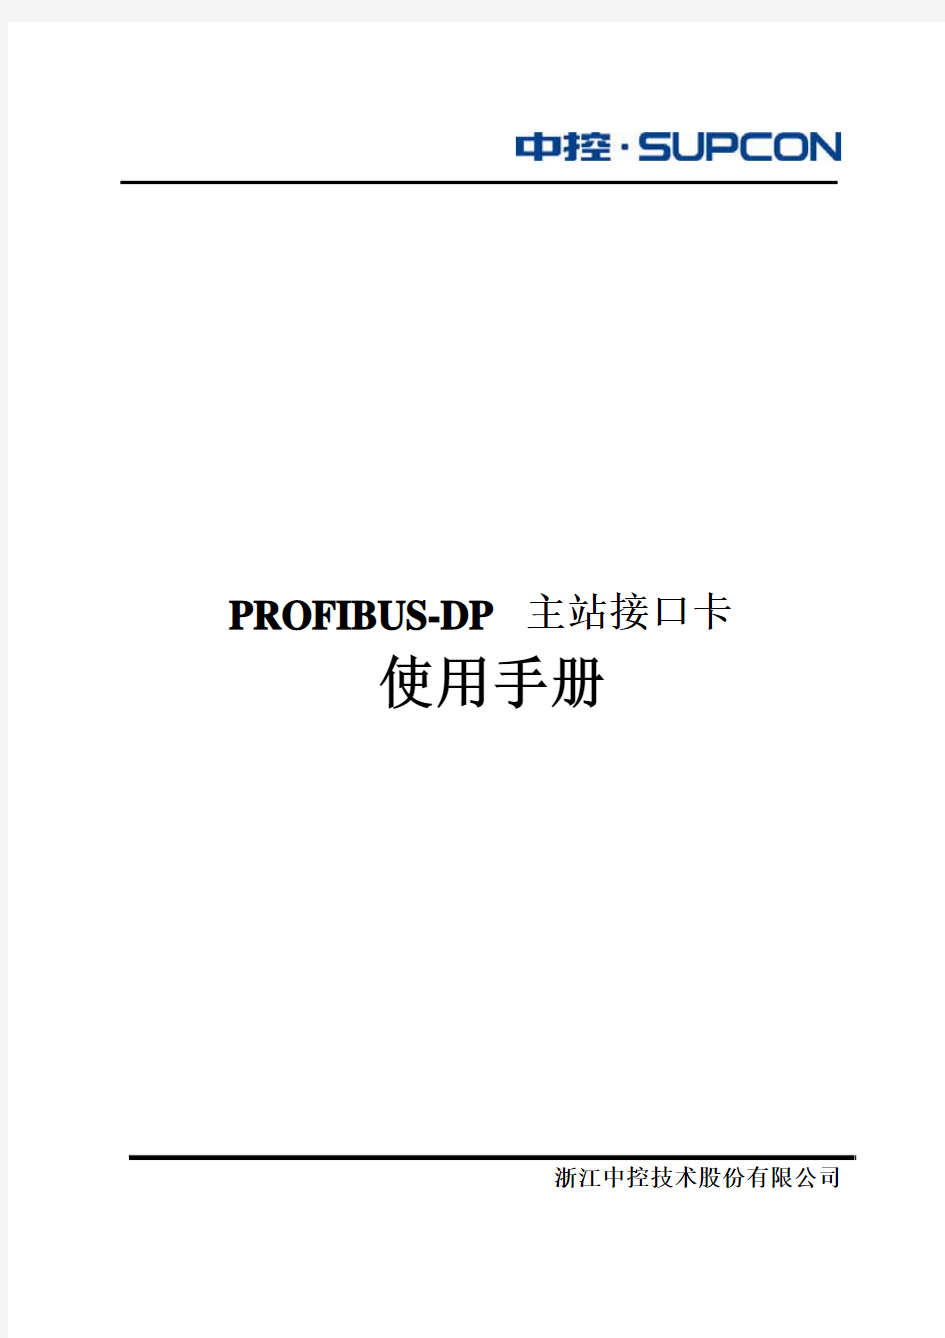 PROFIBUS-DP主站接口卡使用手册